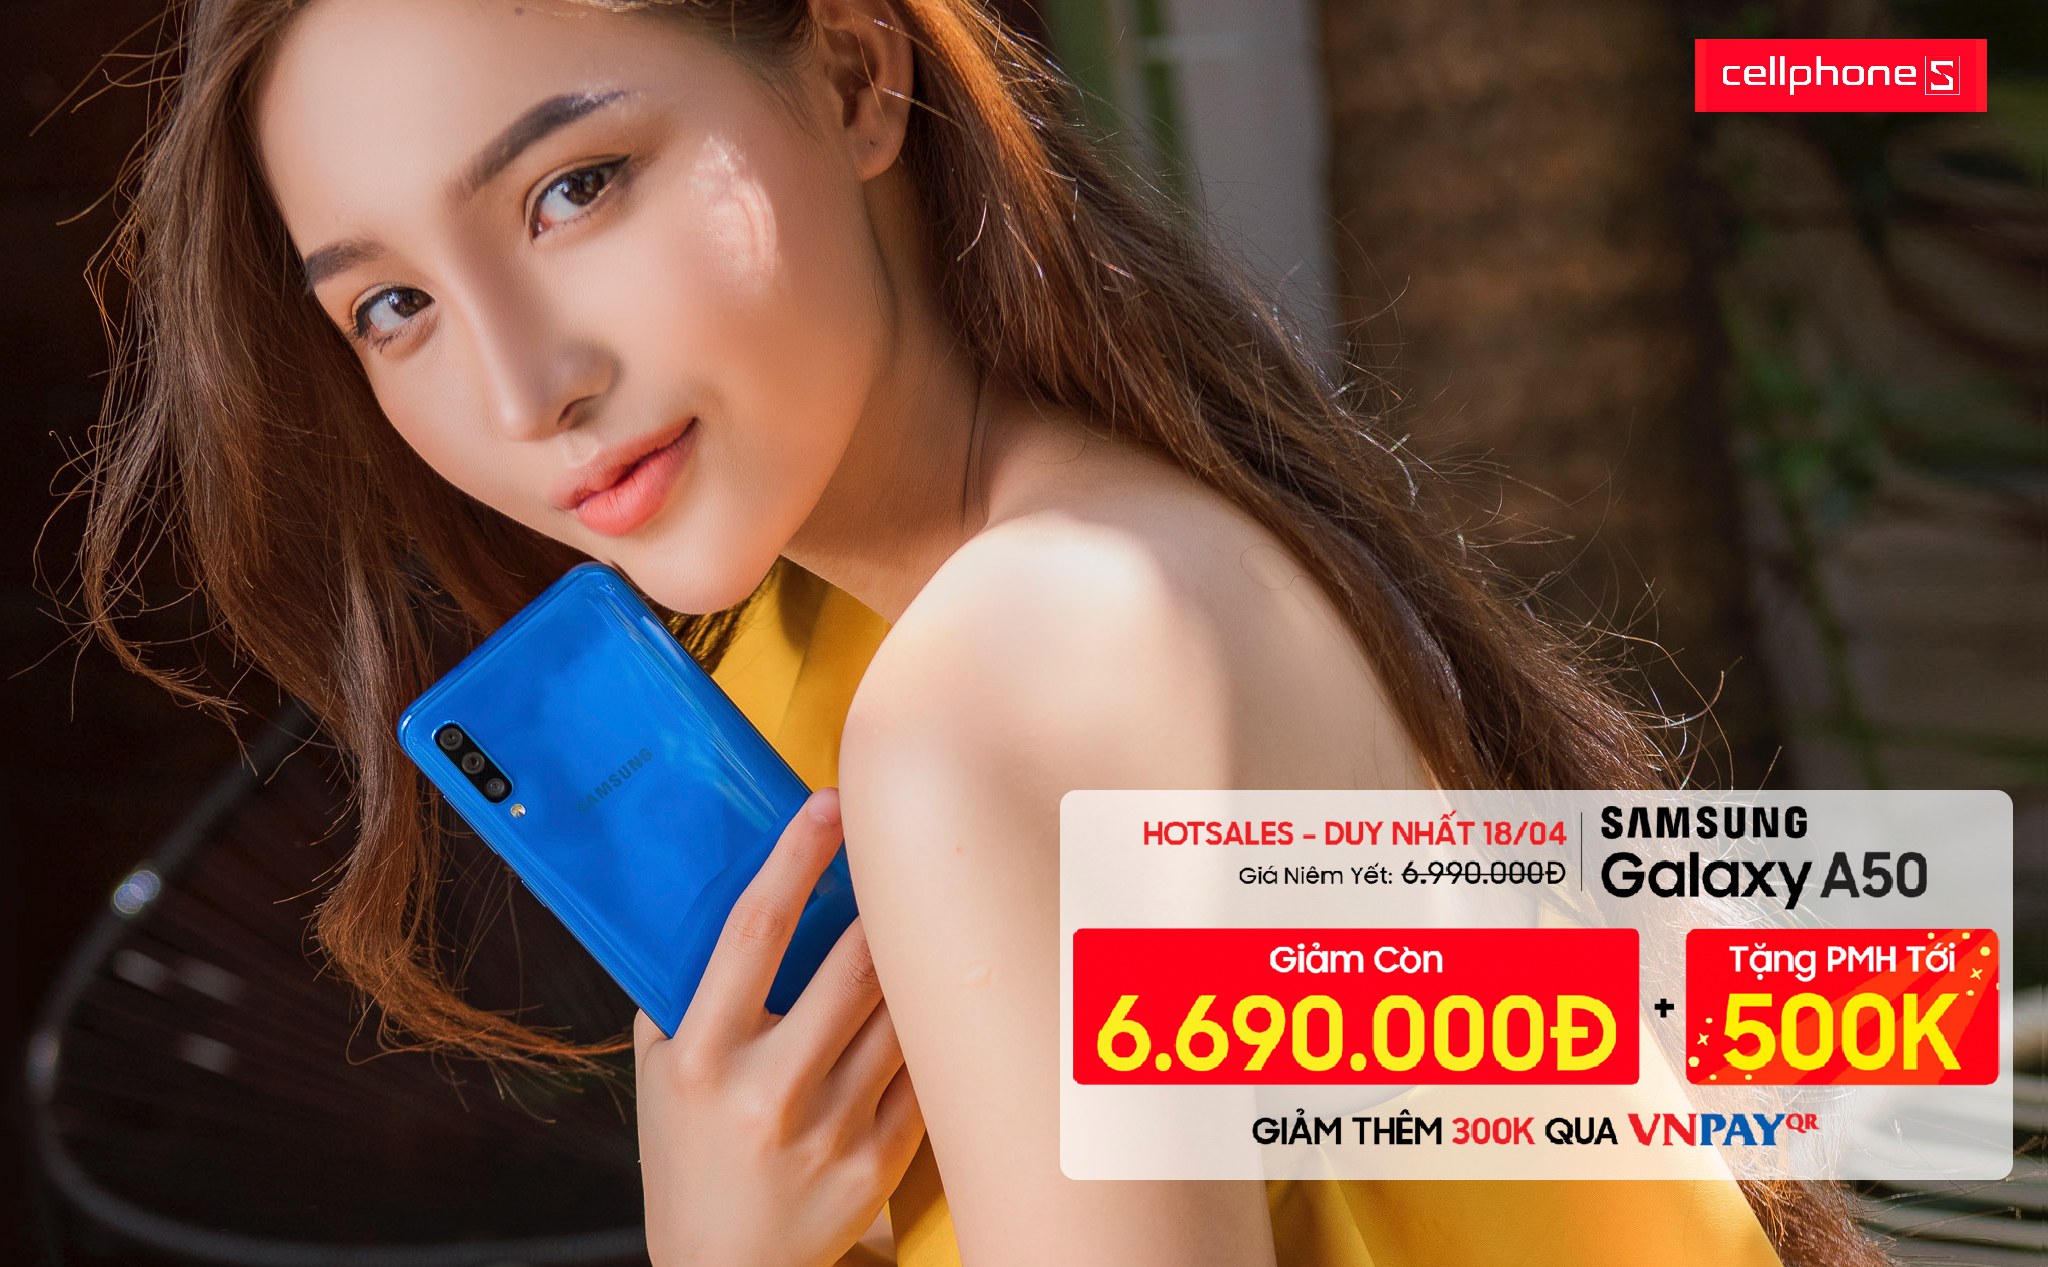 [QC] Chỉ trong 1 ngày, Galaxy A50 giảm sốc tận 1.1 triệu tại CellphoneS